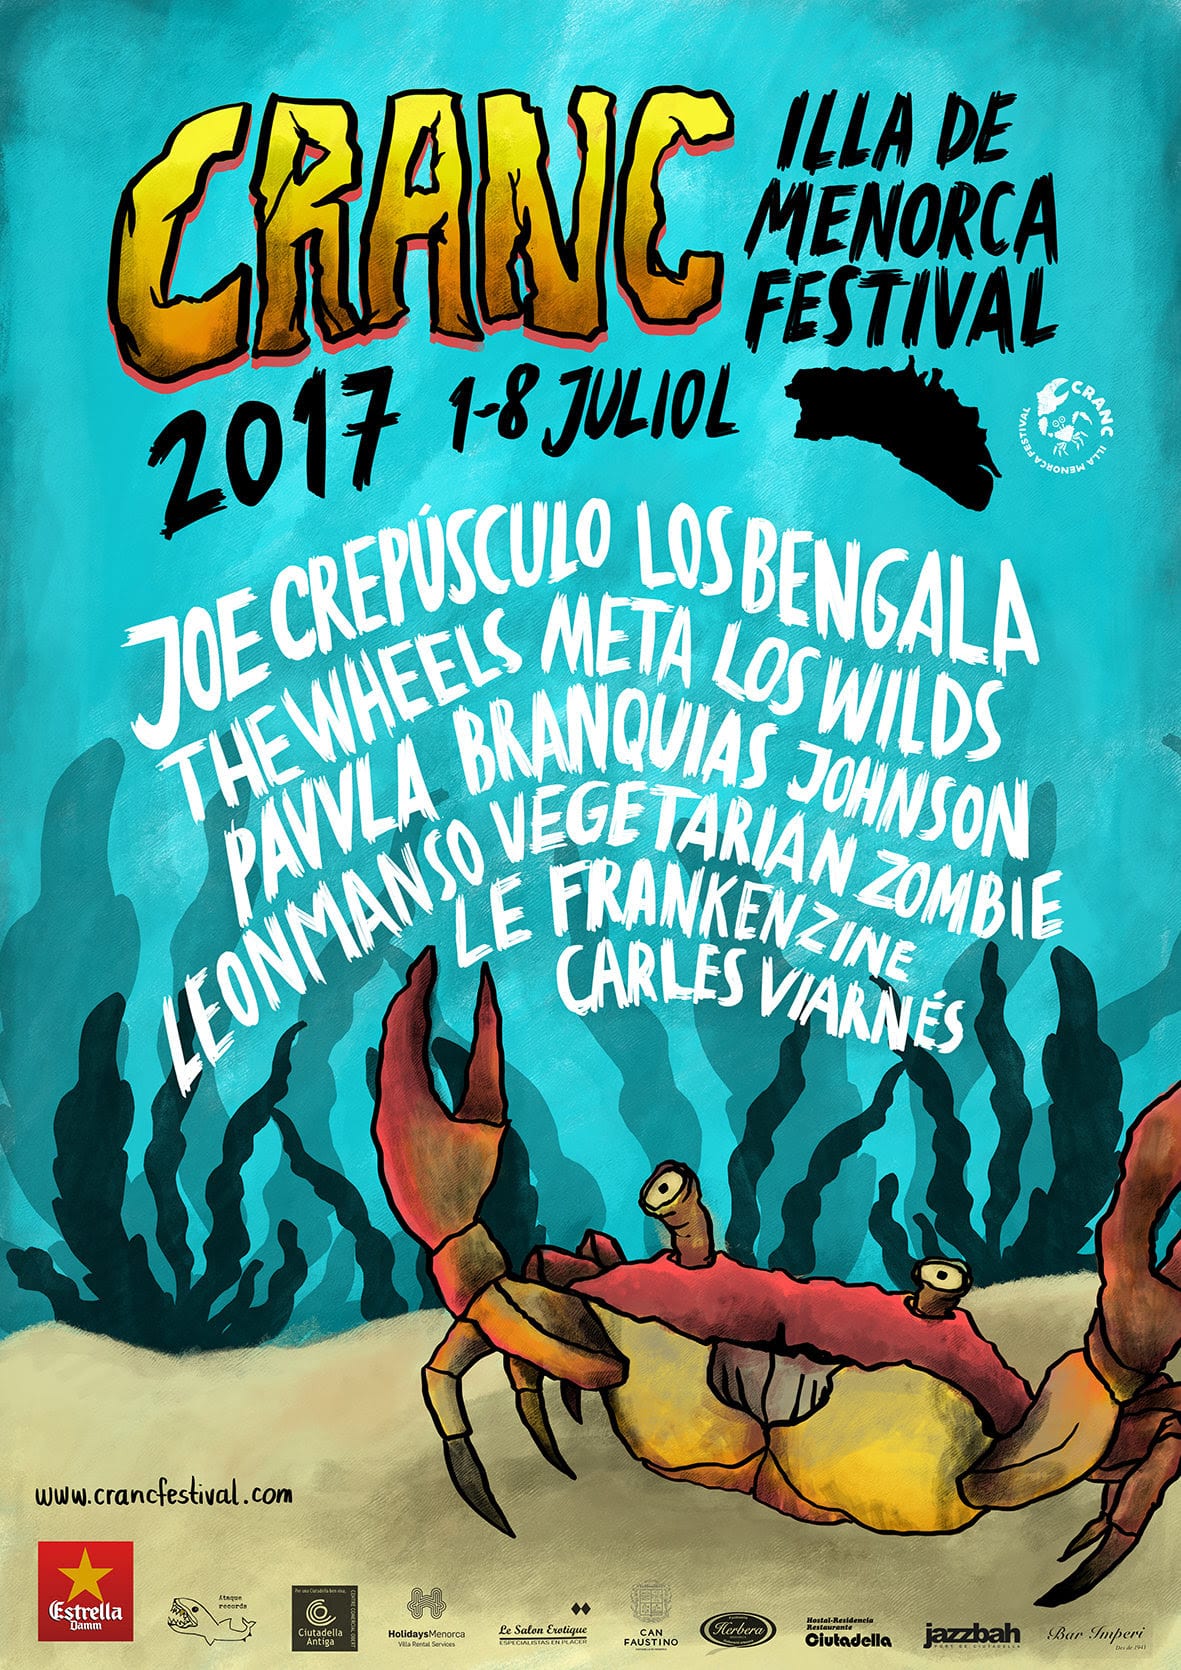 Nace el festival Cranc 2017 en Menorca